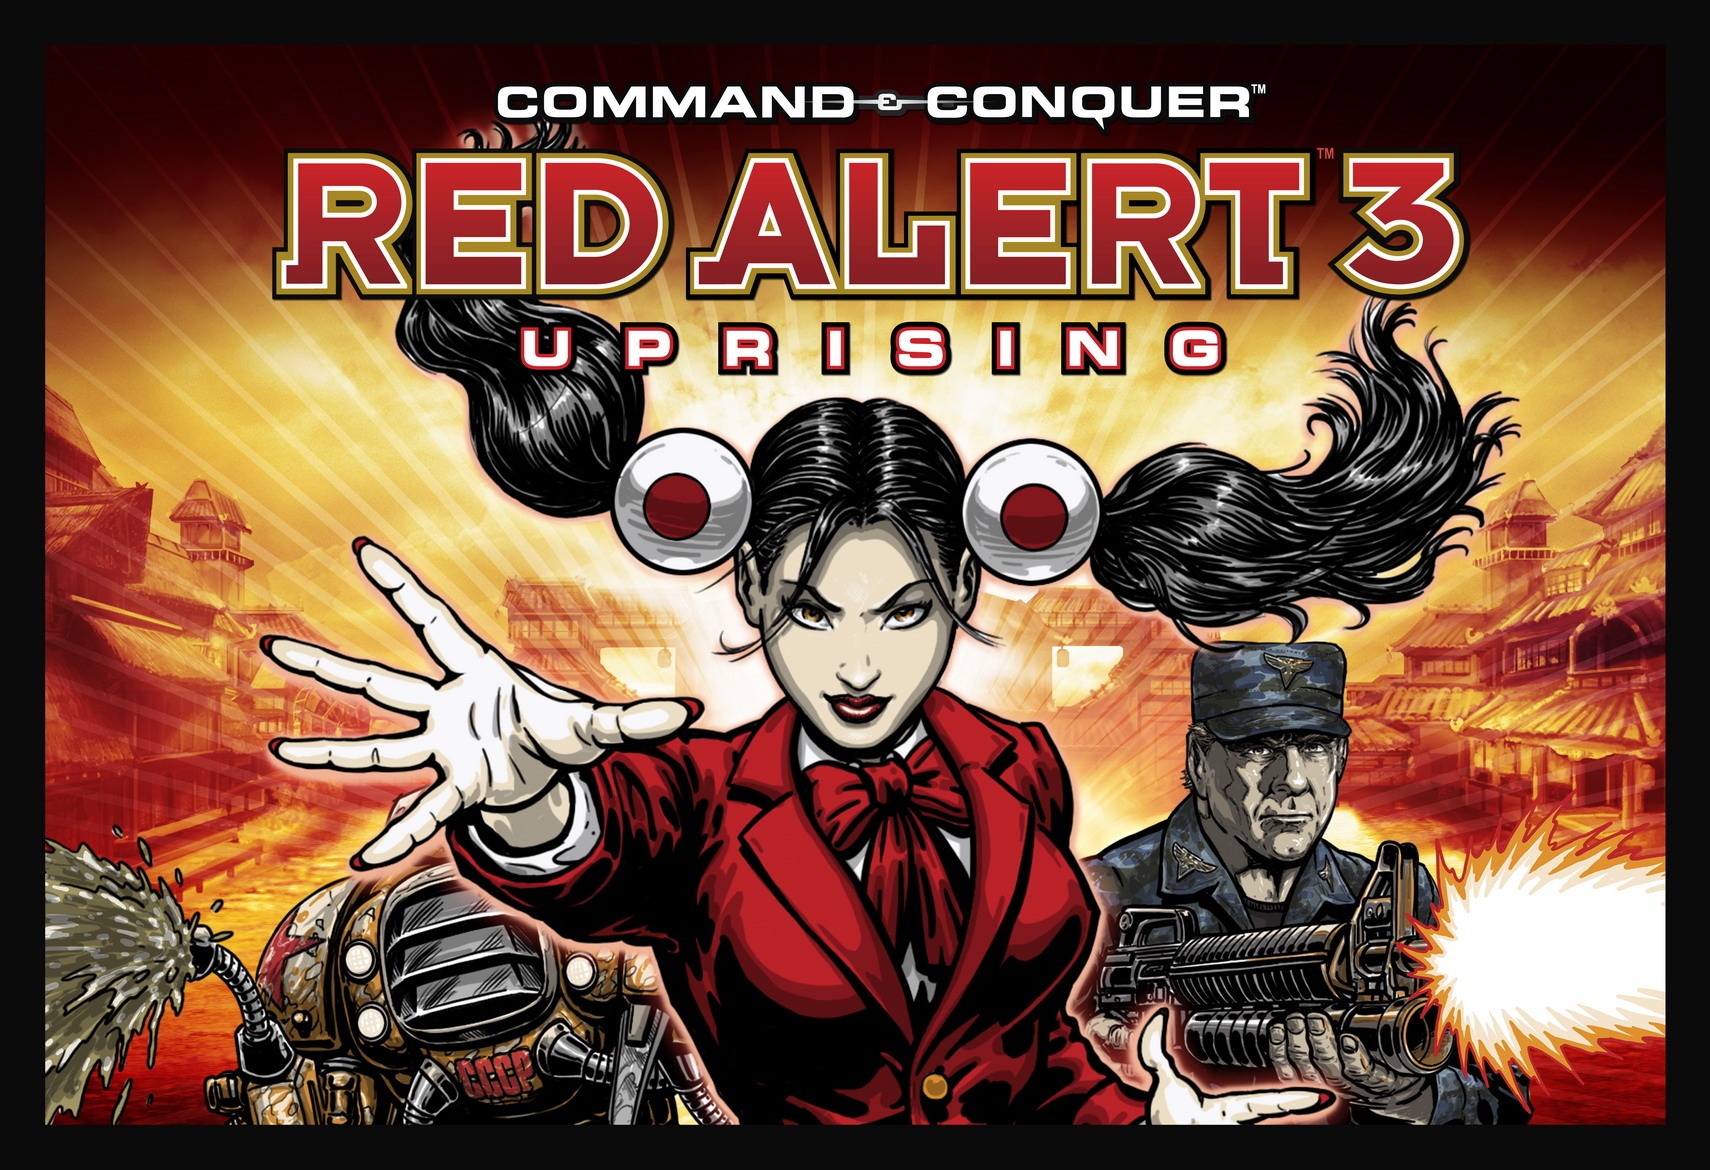 download red alert 3 uprising single link